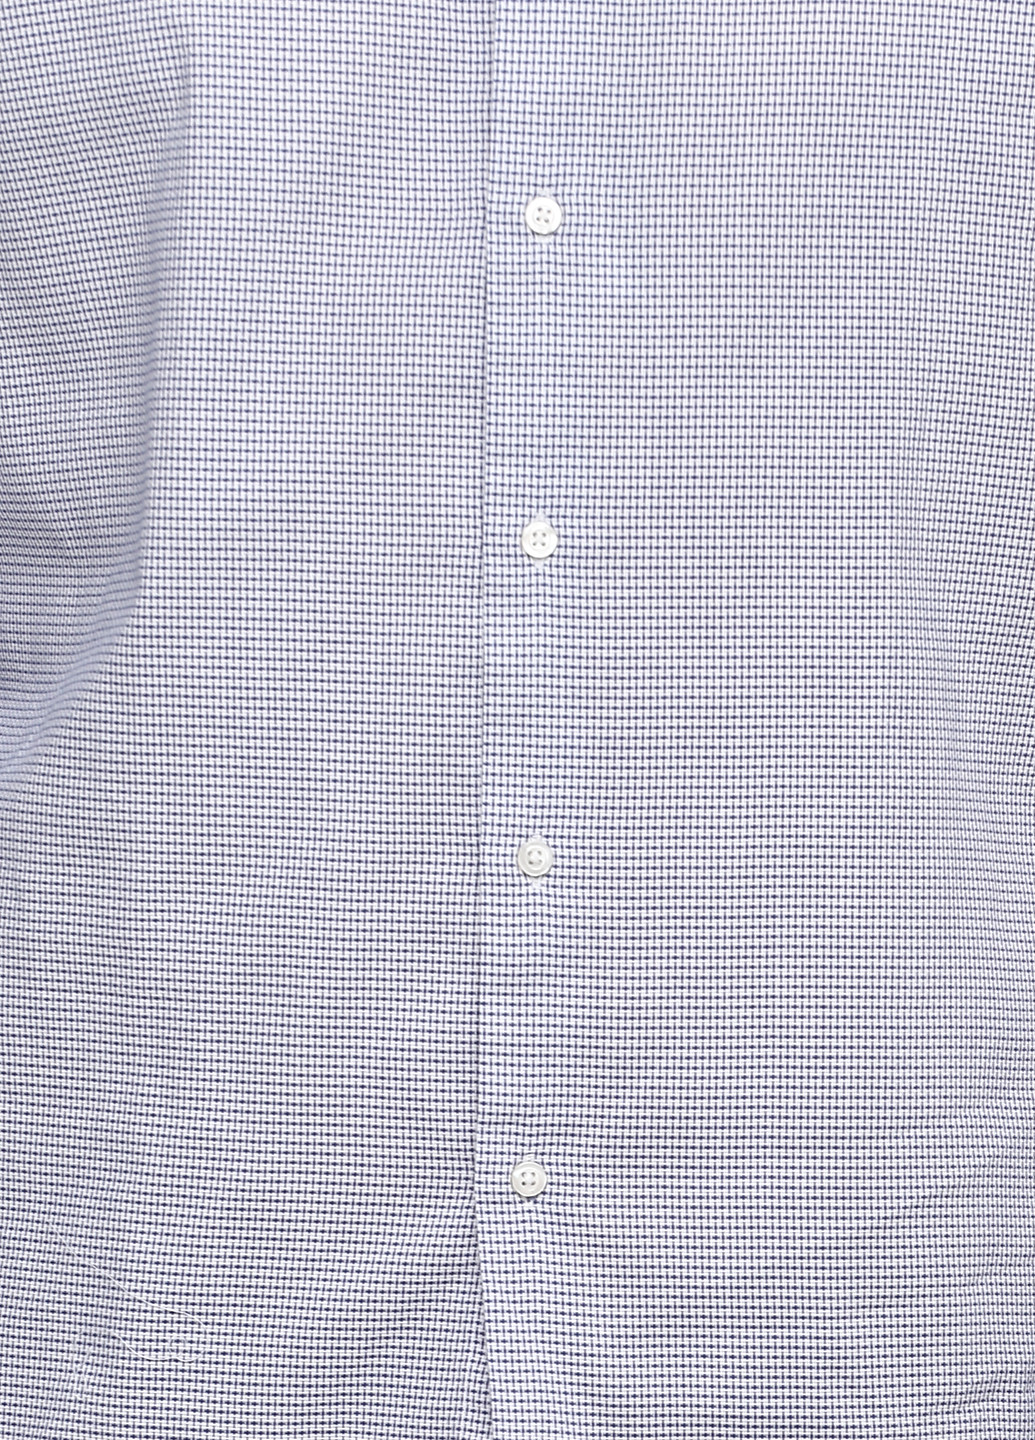 Цветная кэжуал рубашка с геометрическим узором Massimo Dutti с длинным рукавом